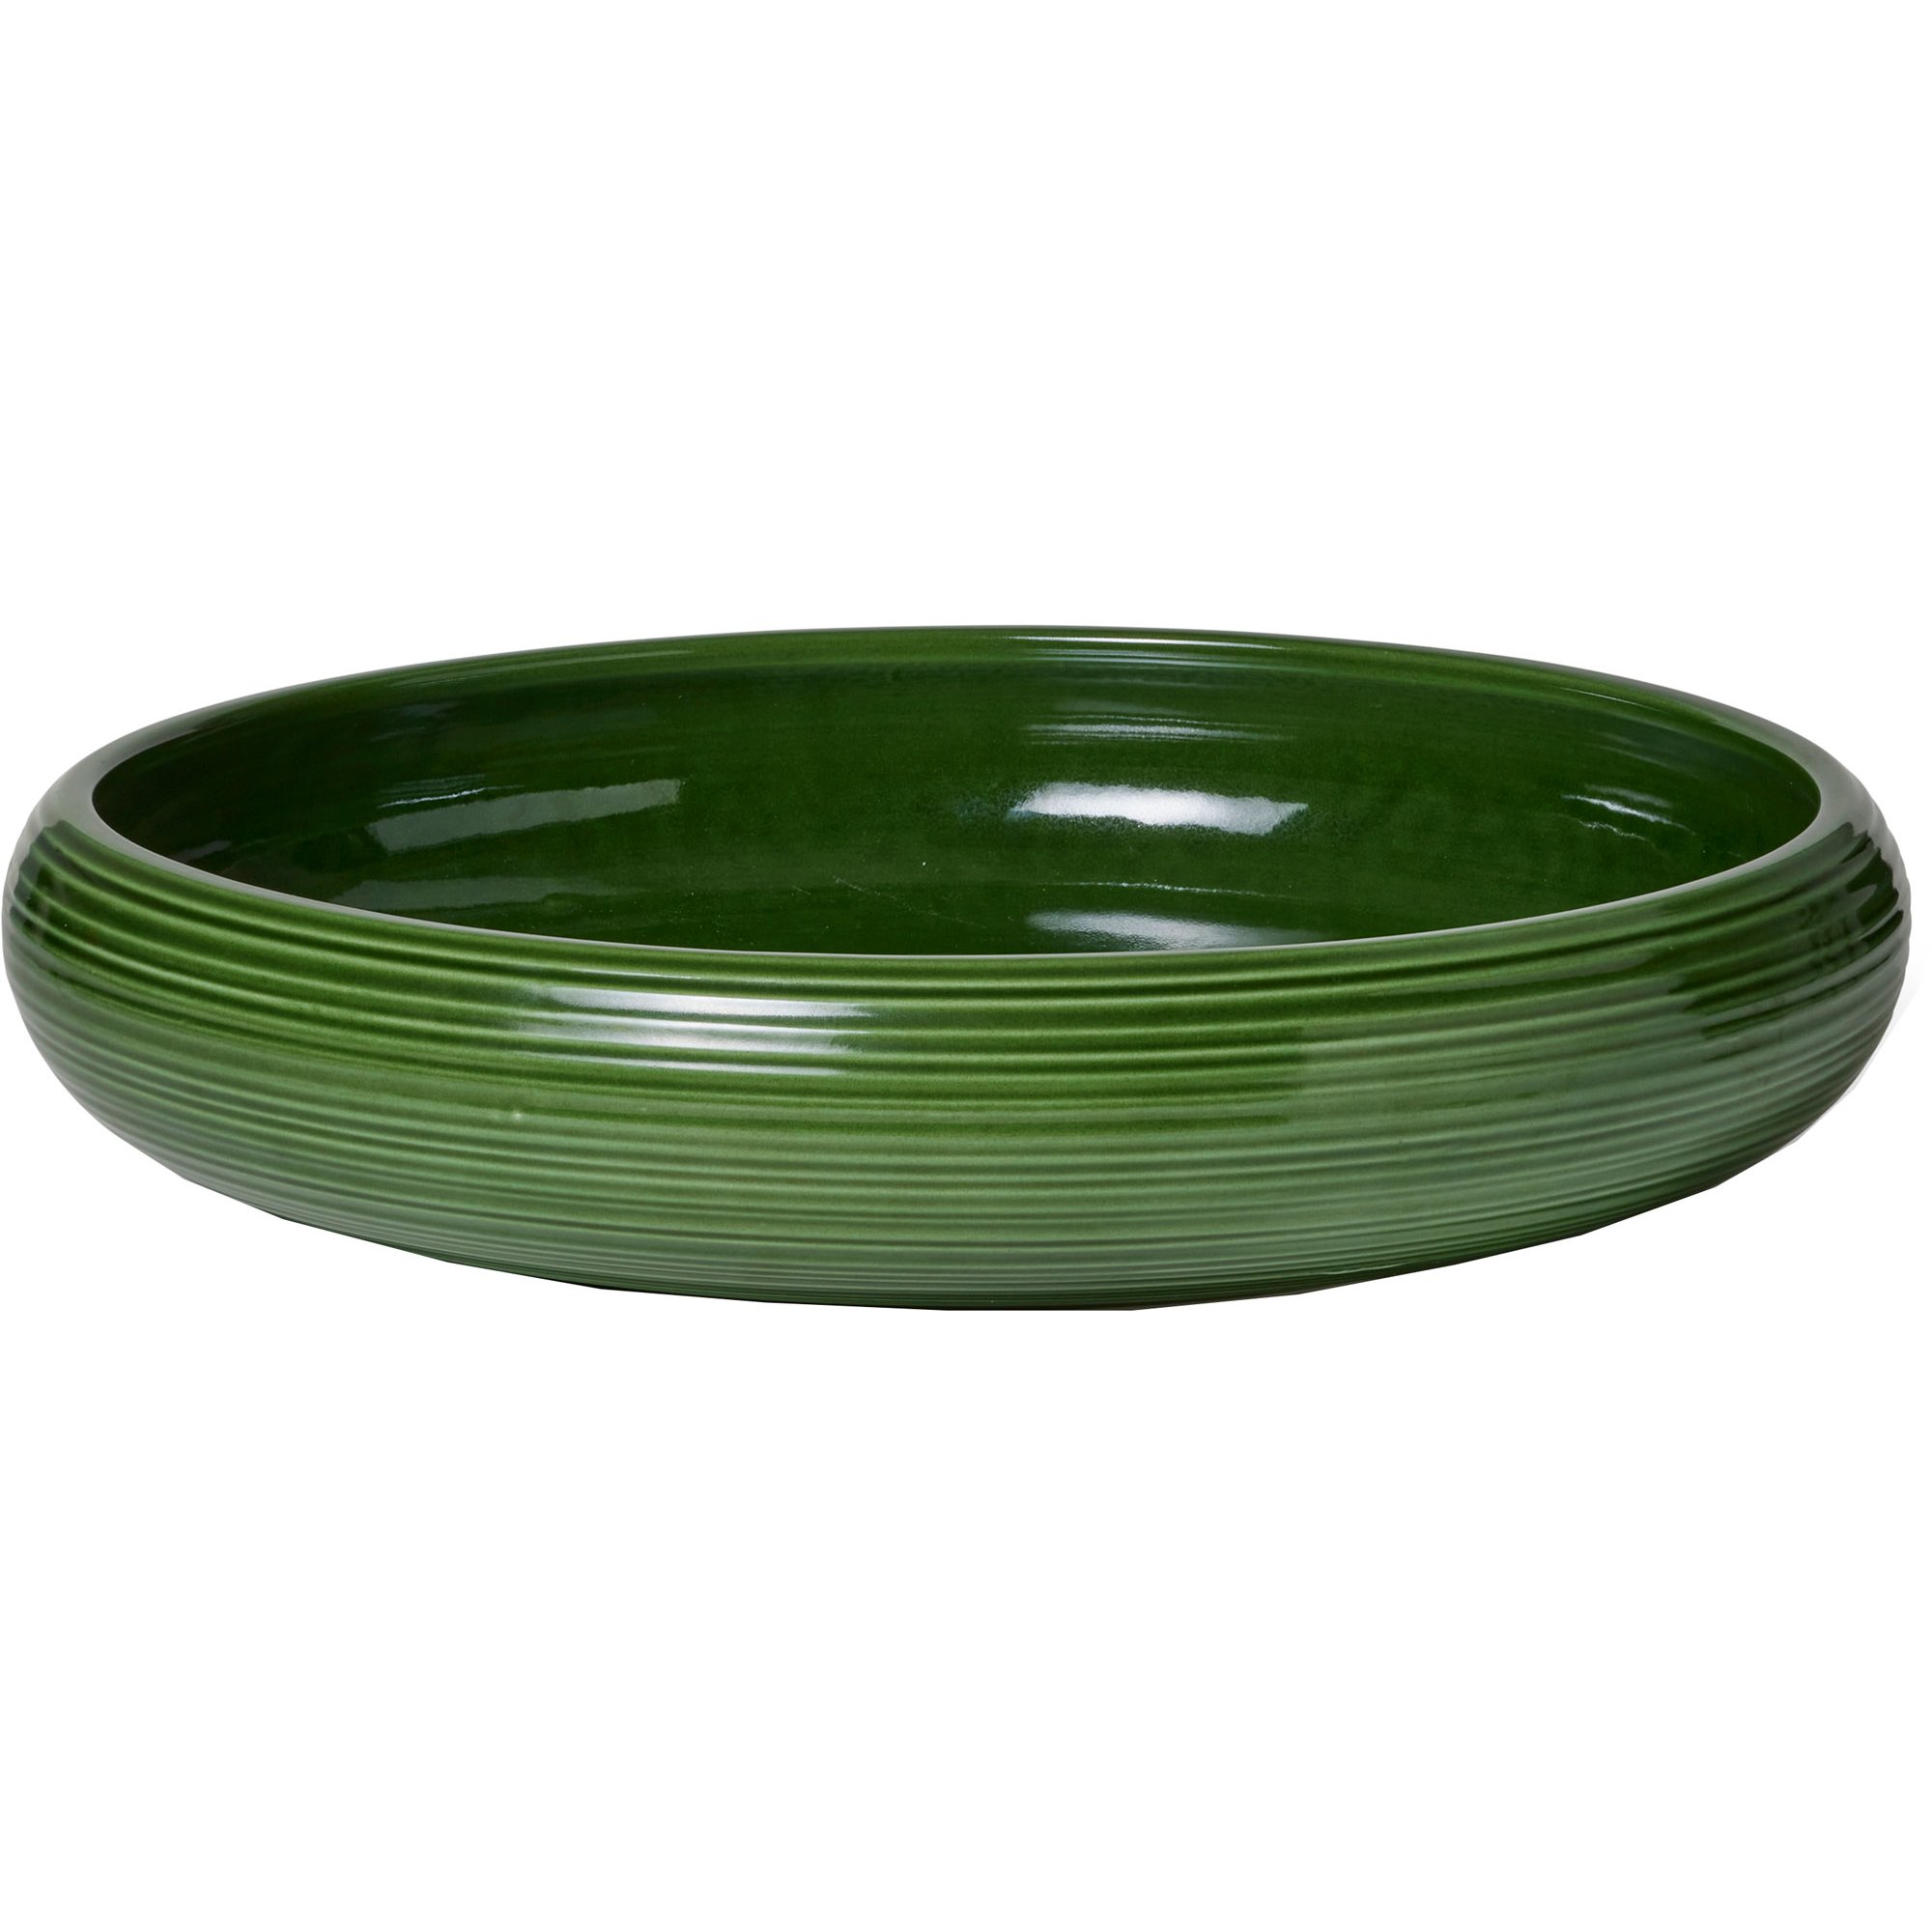 9: Kähler Colore skål, 34 cm, sage green